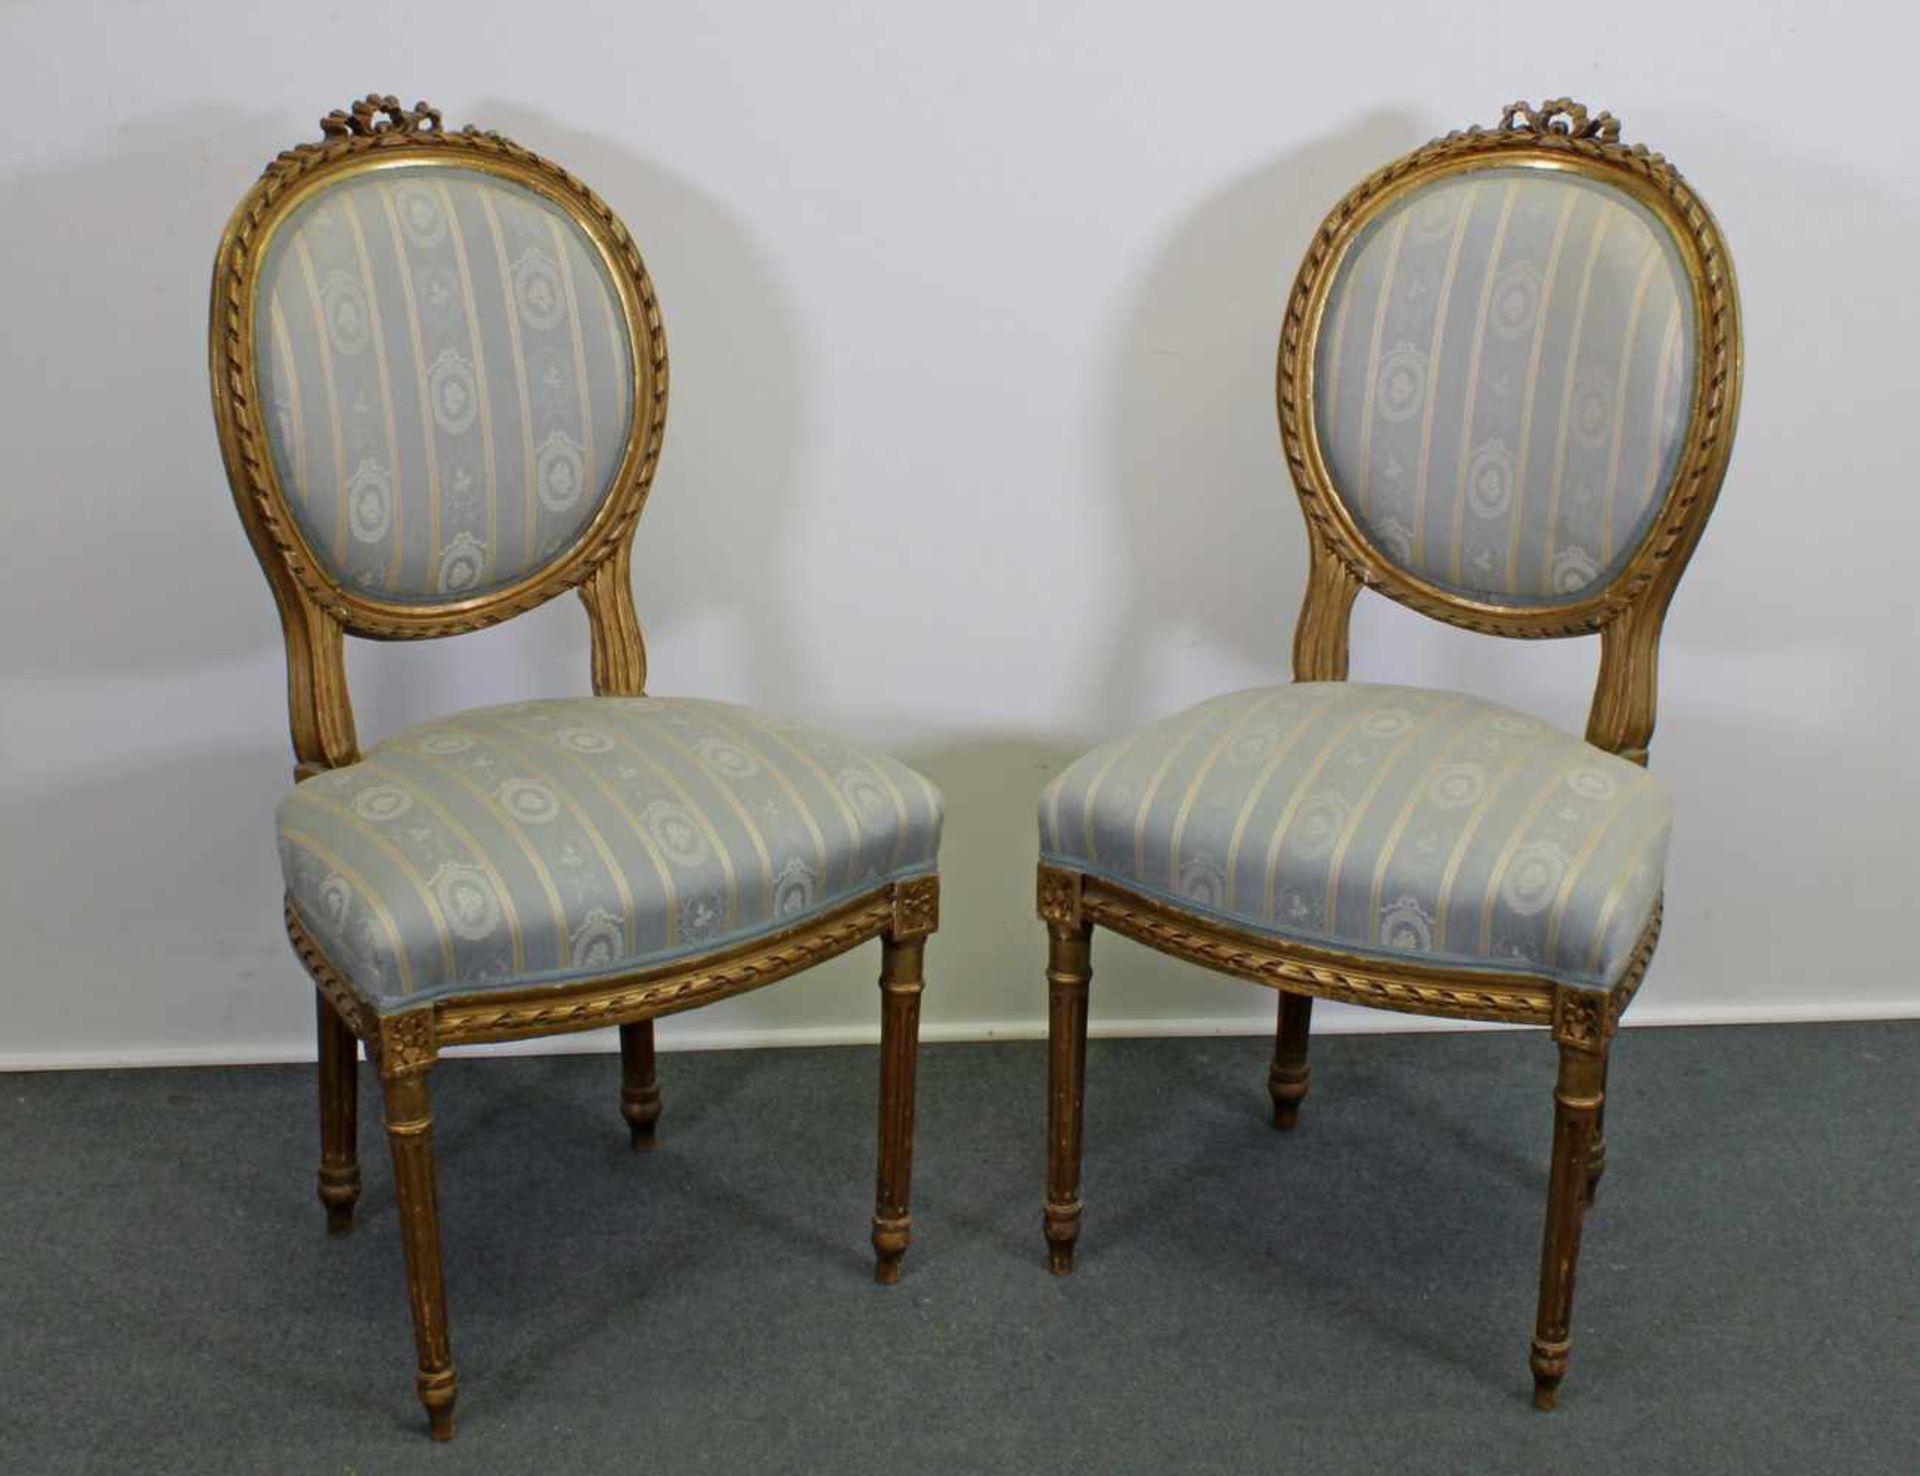 Paar Stühle, Louis XVI-Stil, um 1900, Holz, goldbronziert, gepolstert, Gebrauchsspuren- - -25.00 % - Image 2 of 2